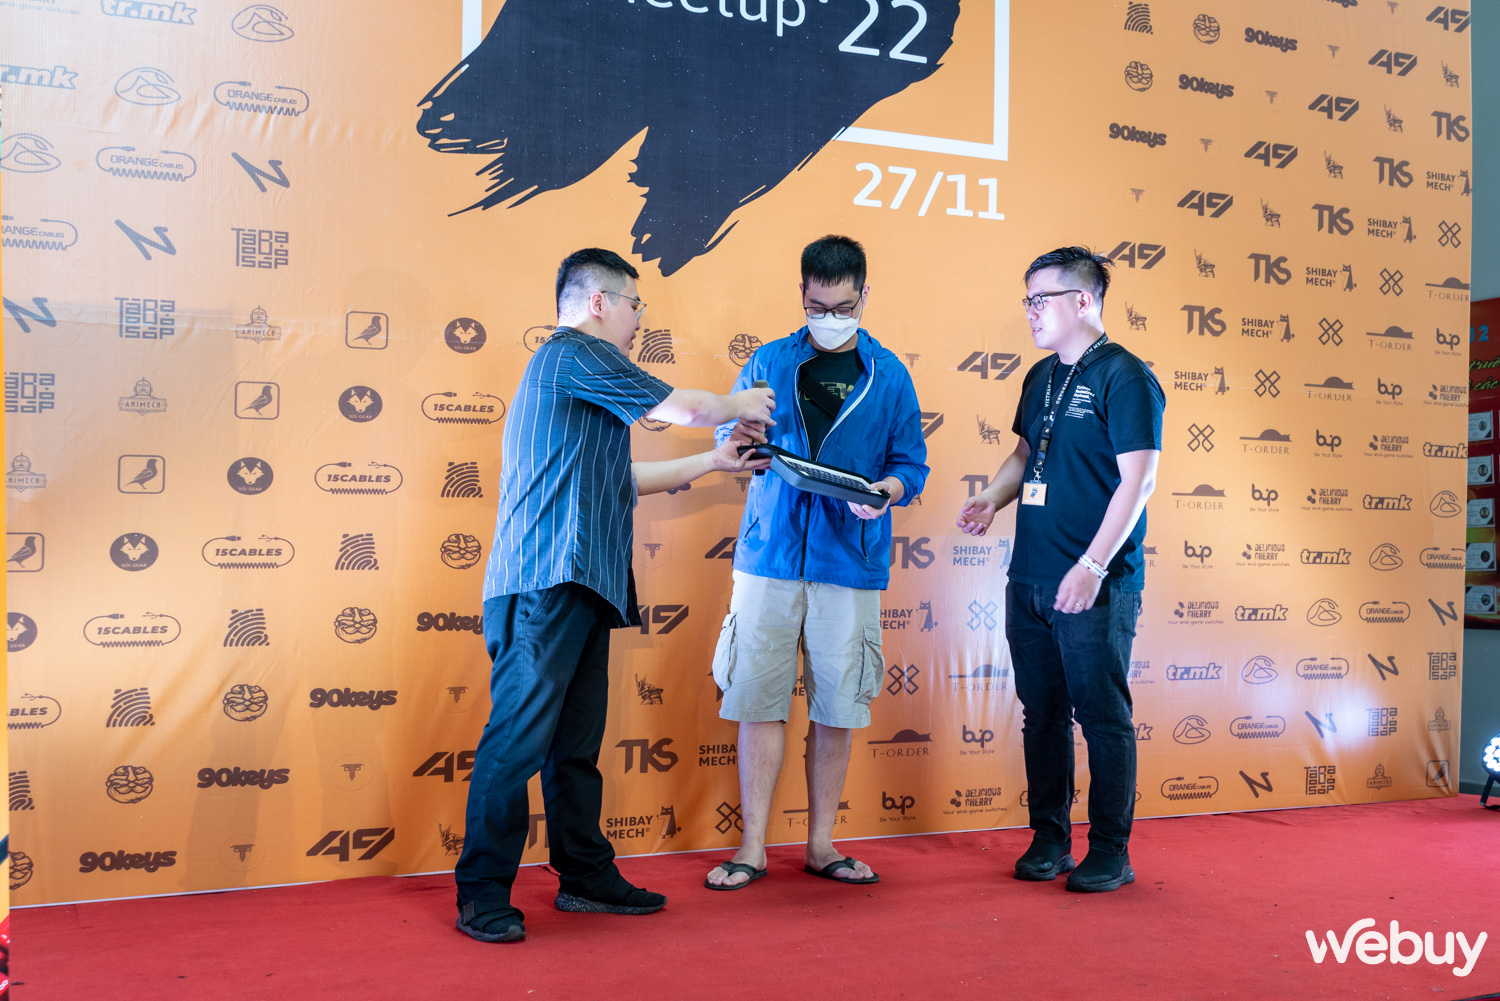 Dạo một vòng VNMK Meetup 2022: Sự kiện lớn nhất Hà Nội cho những người đam mê bàn phím cơ - Ảnh 13.